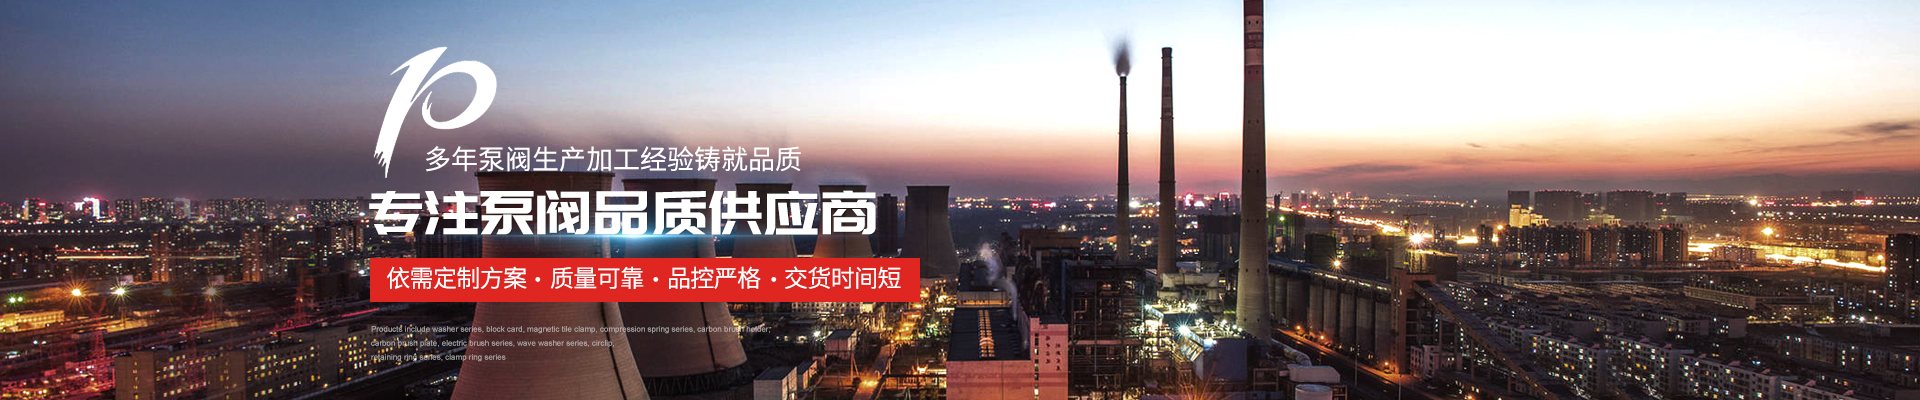 雙吸泵廠家 - 上海高適泵閥有限公司